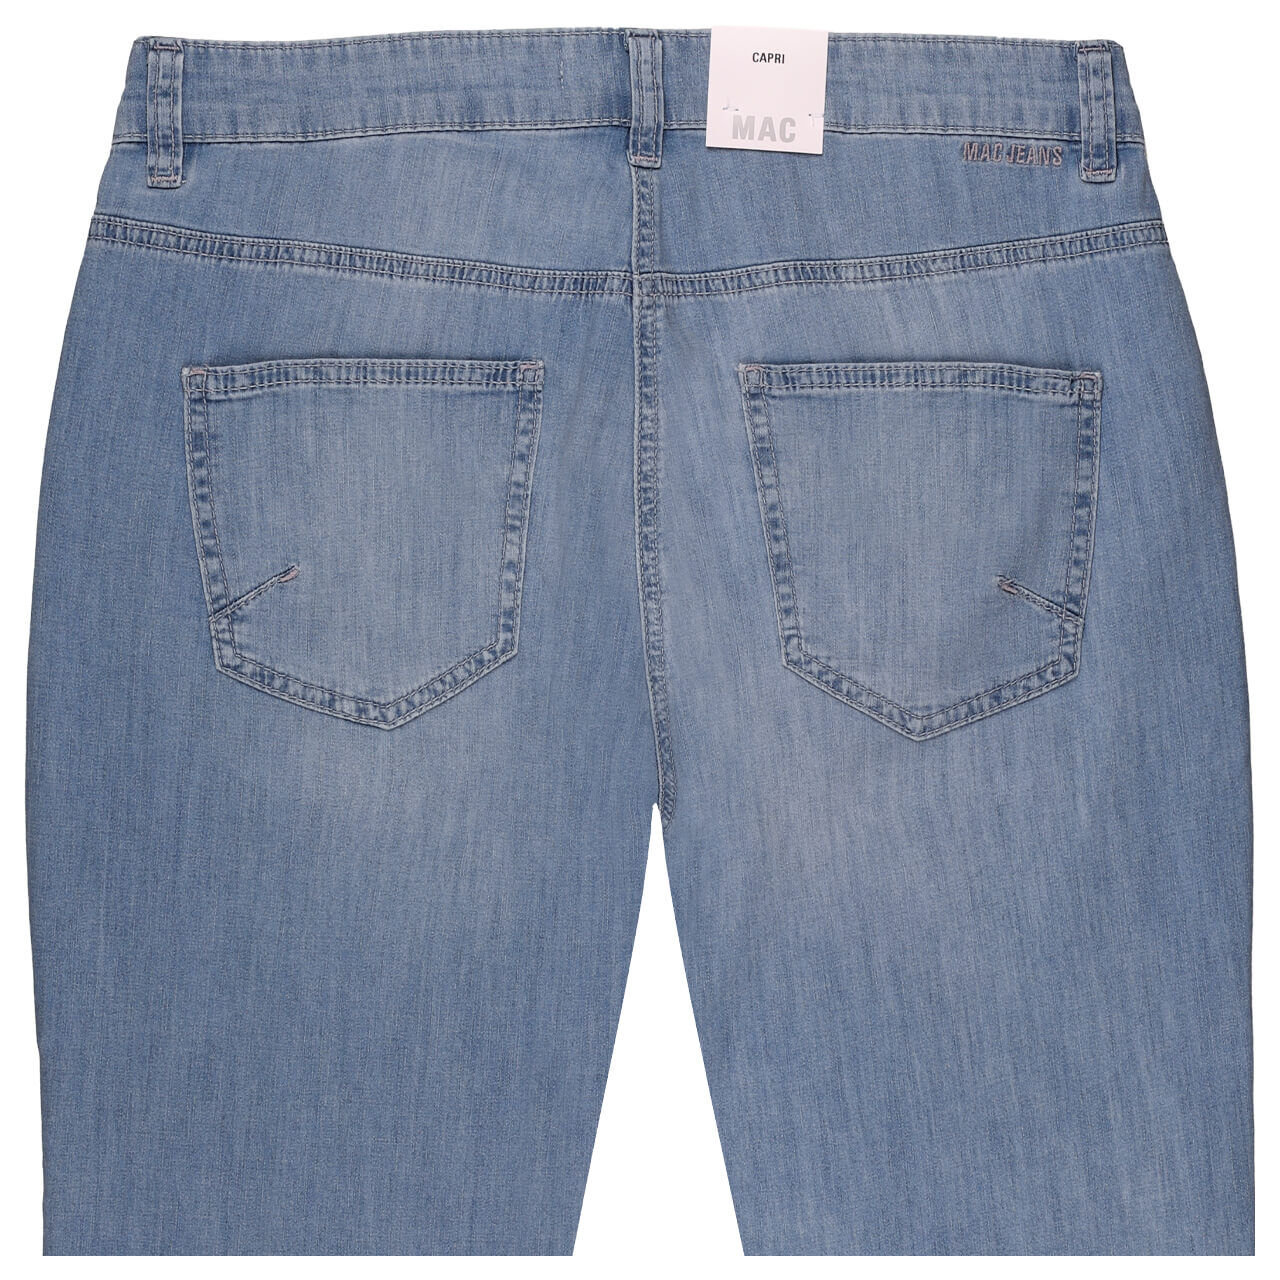 MAC Capri 3/4 Jeans blue authentic wash